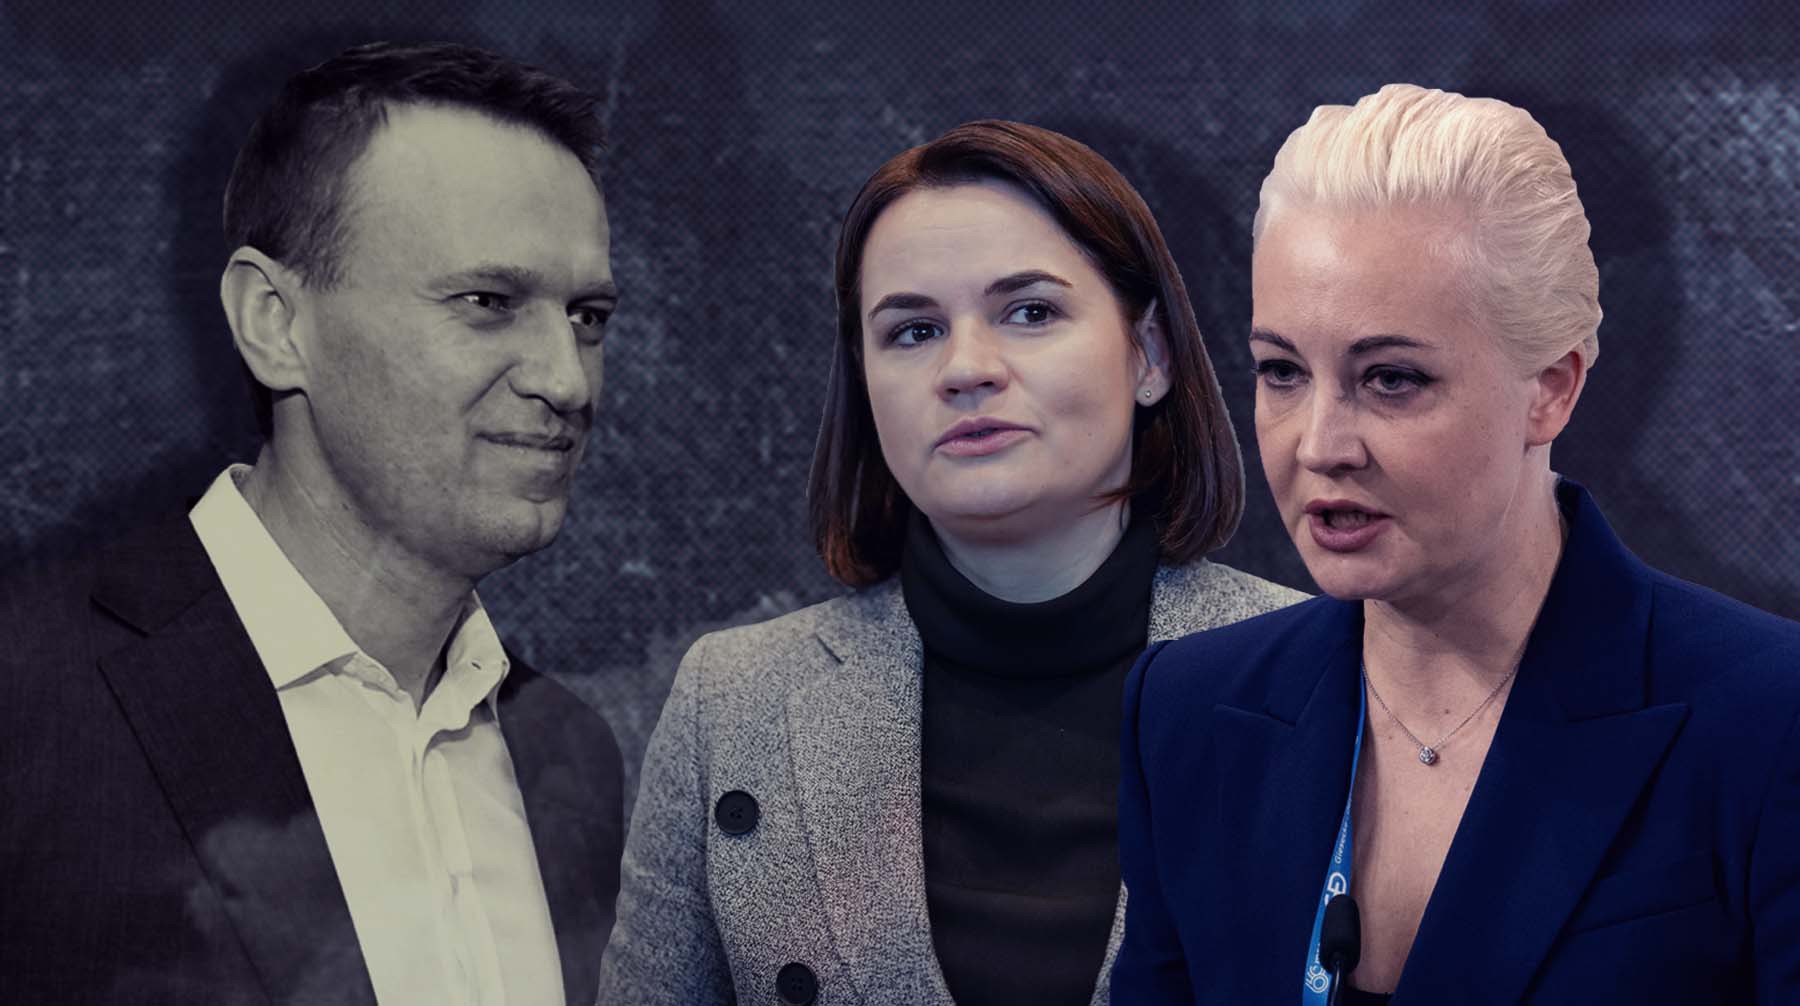 Dailystorm - Юлия Навальная повторит судьбу Тихановской? Политологи уверены, что вдова политика не сможет возглавить либеральную оппозицию